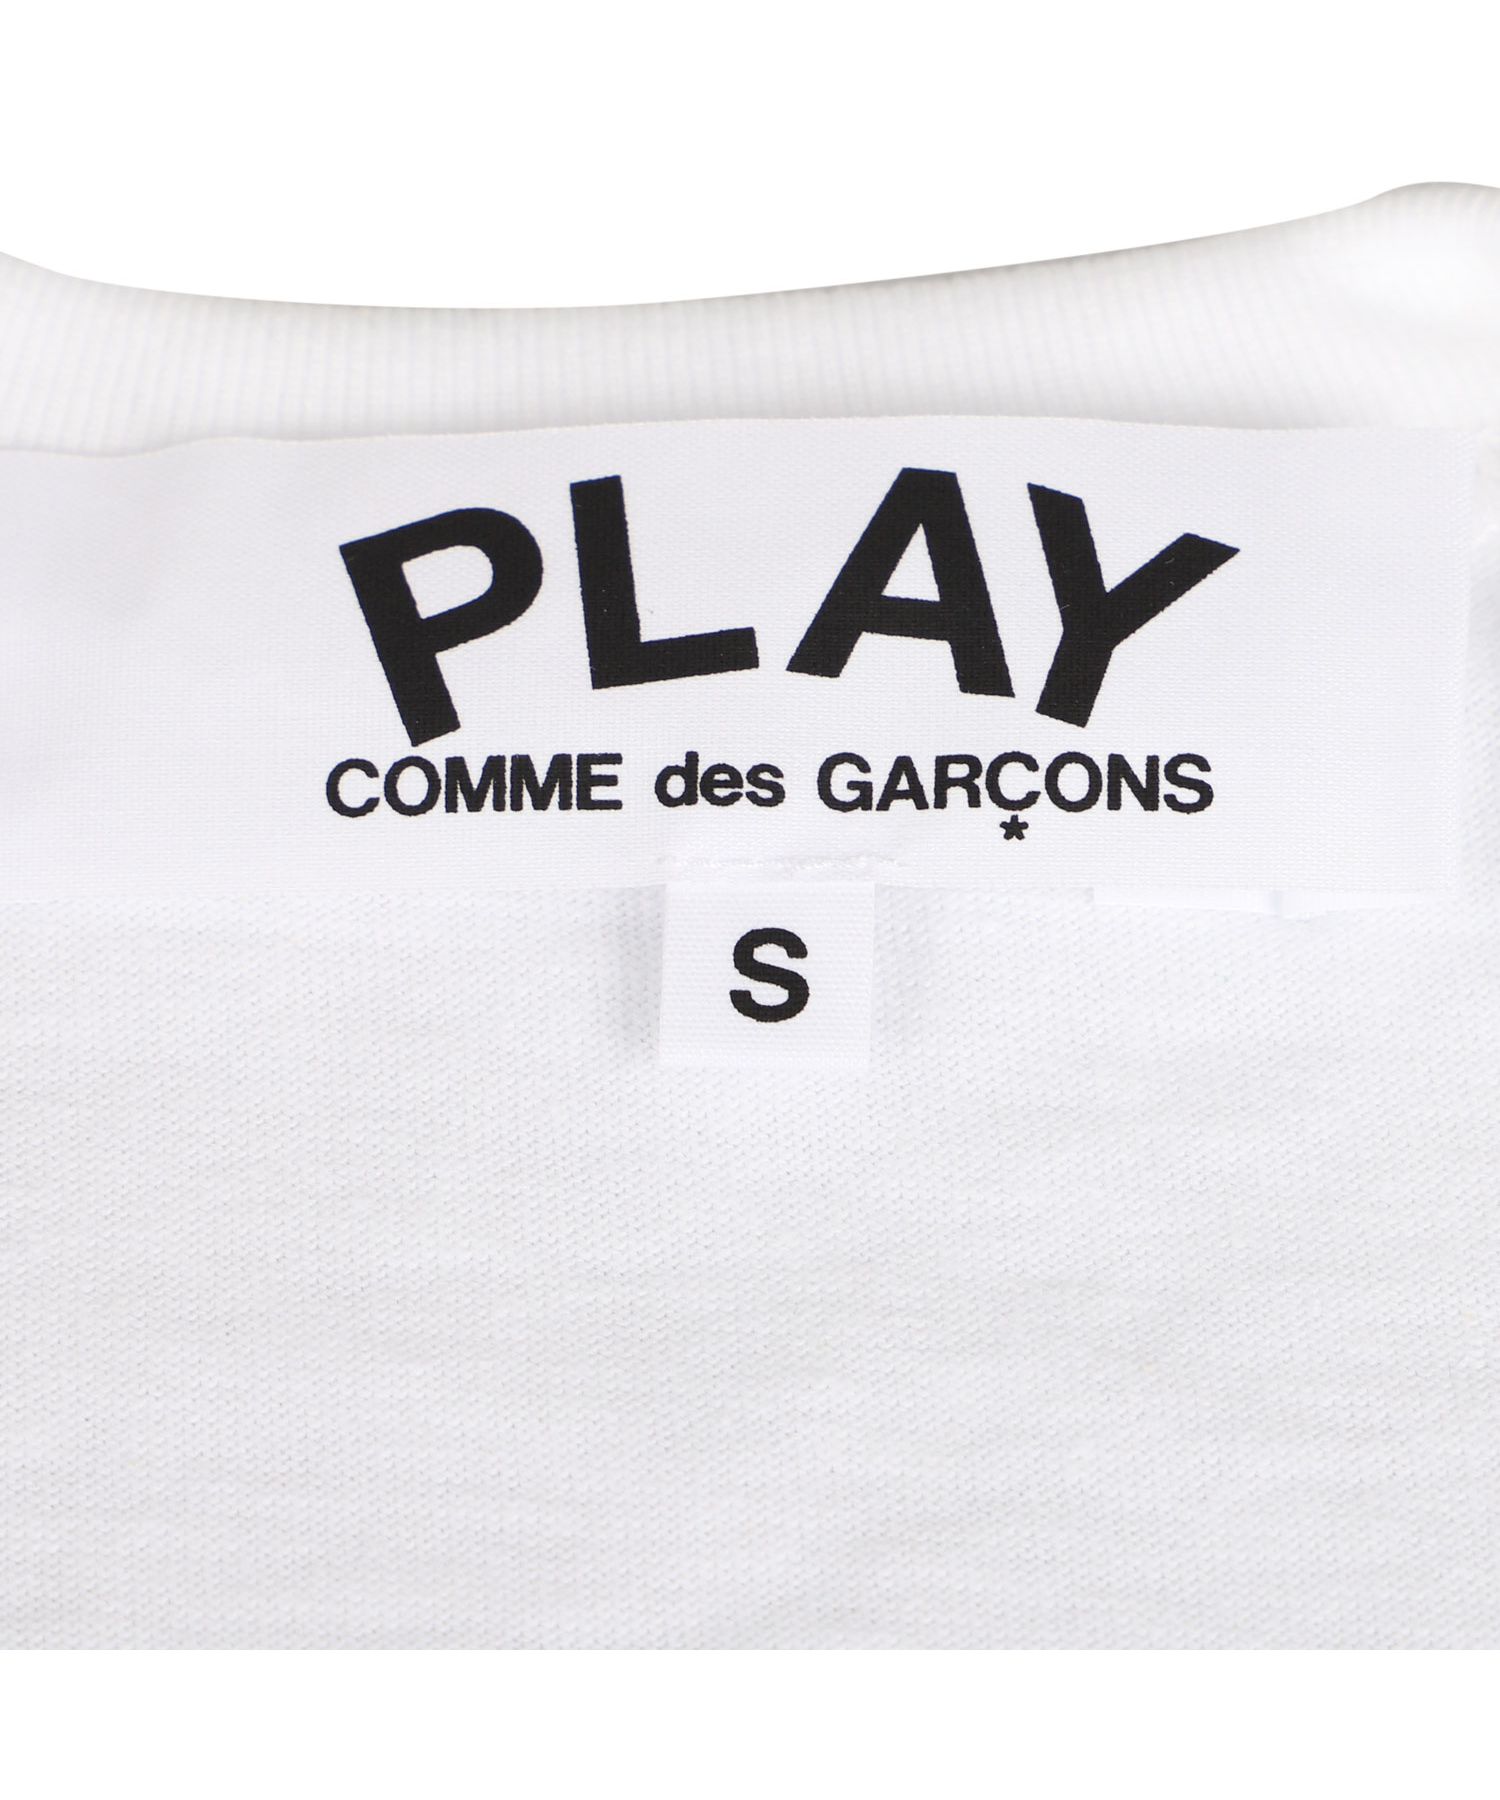 【期間限定セール】COMME des GARCONS Playメンズ カットソーグレー